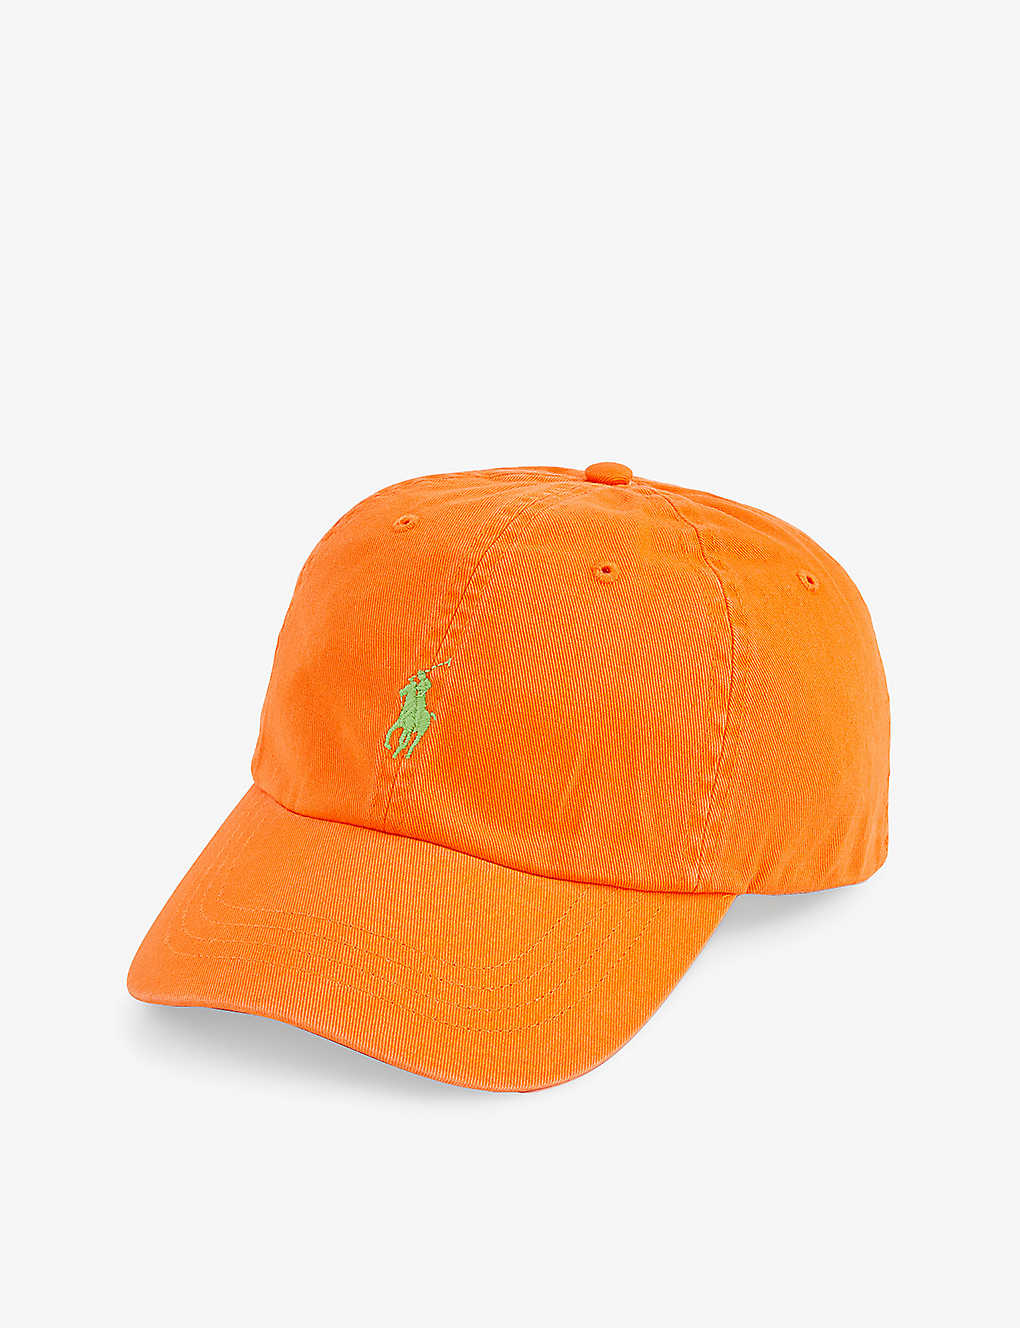 Polo Ralph Lauren Hats In Resort Orange